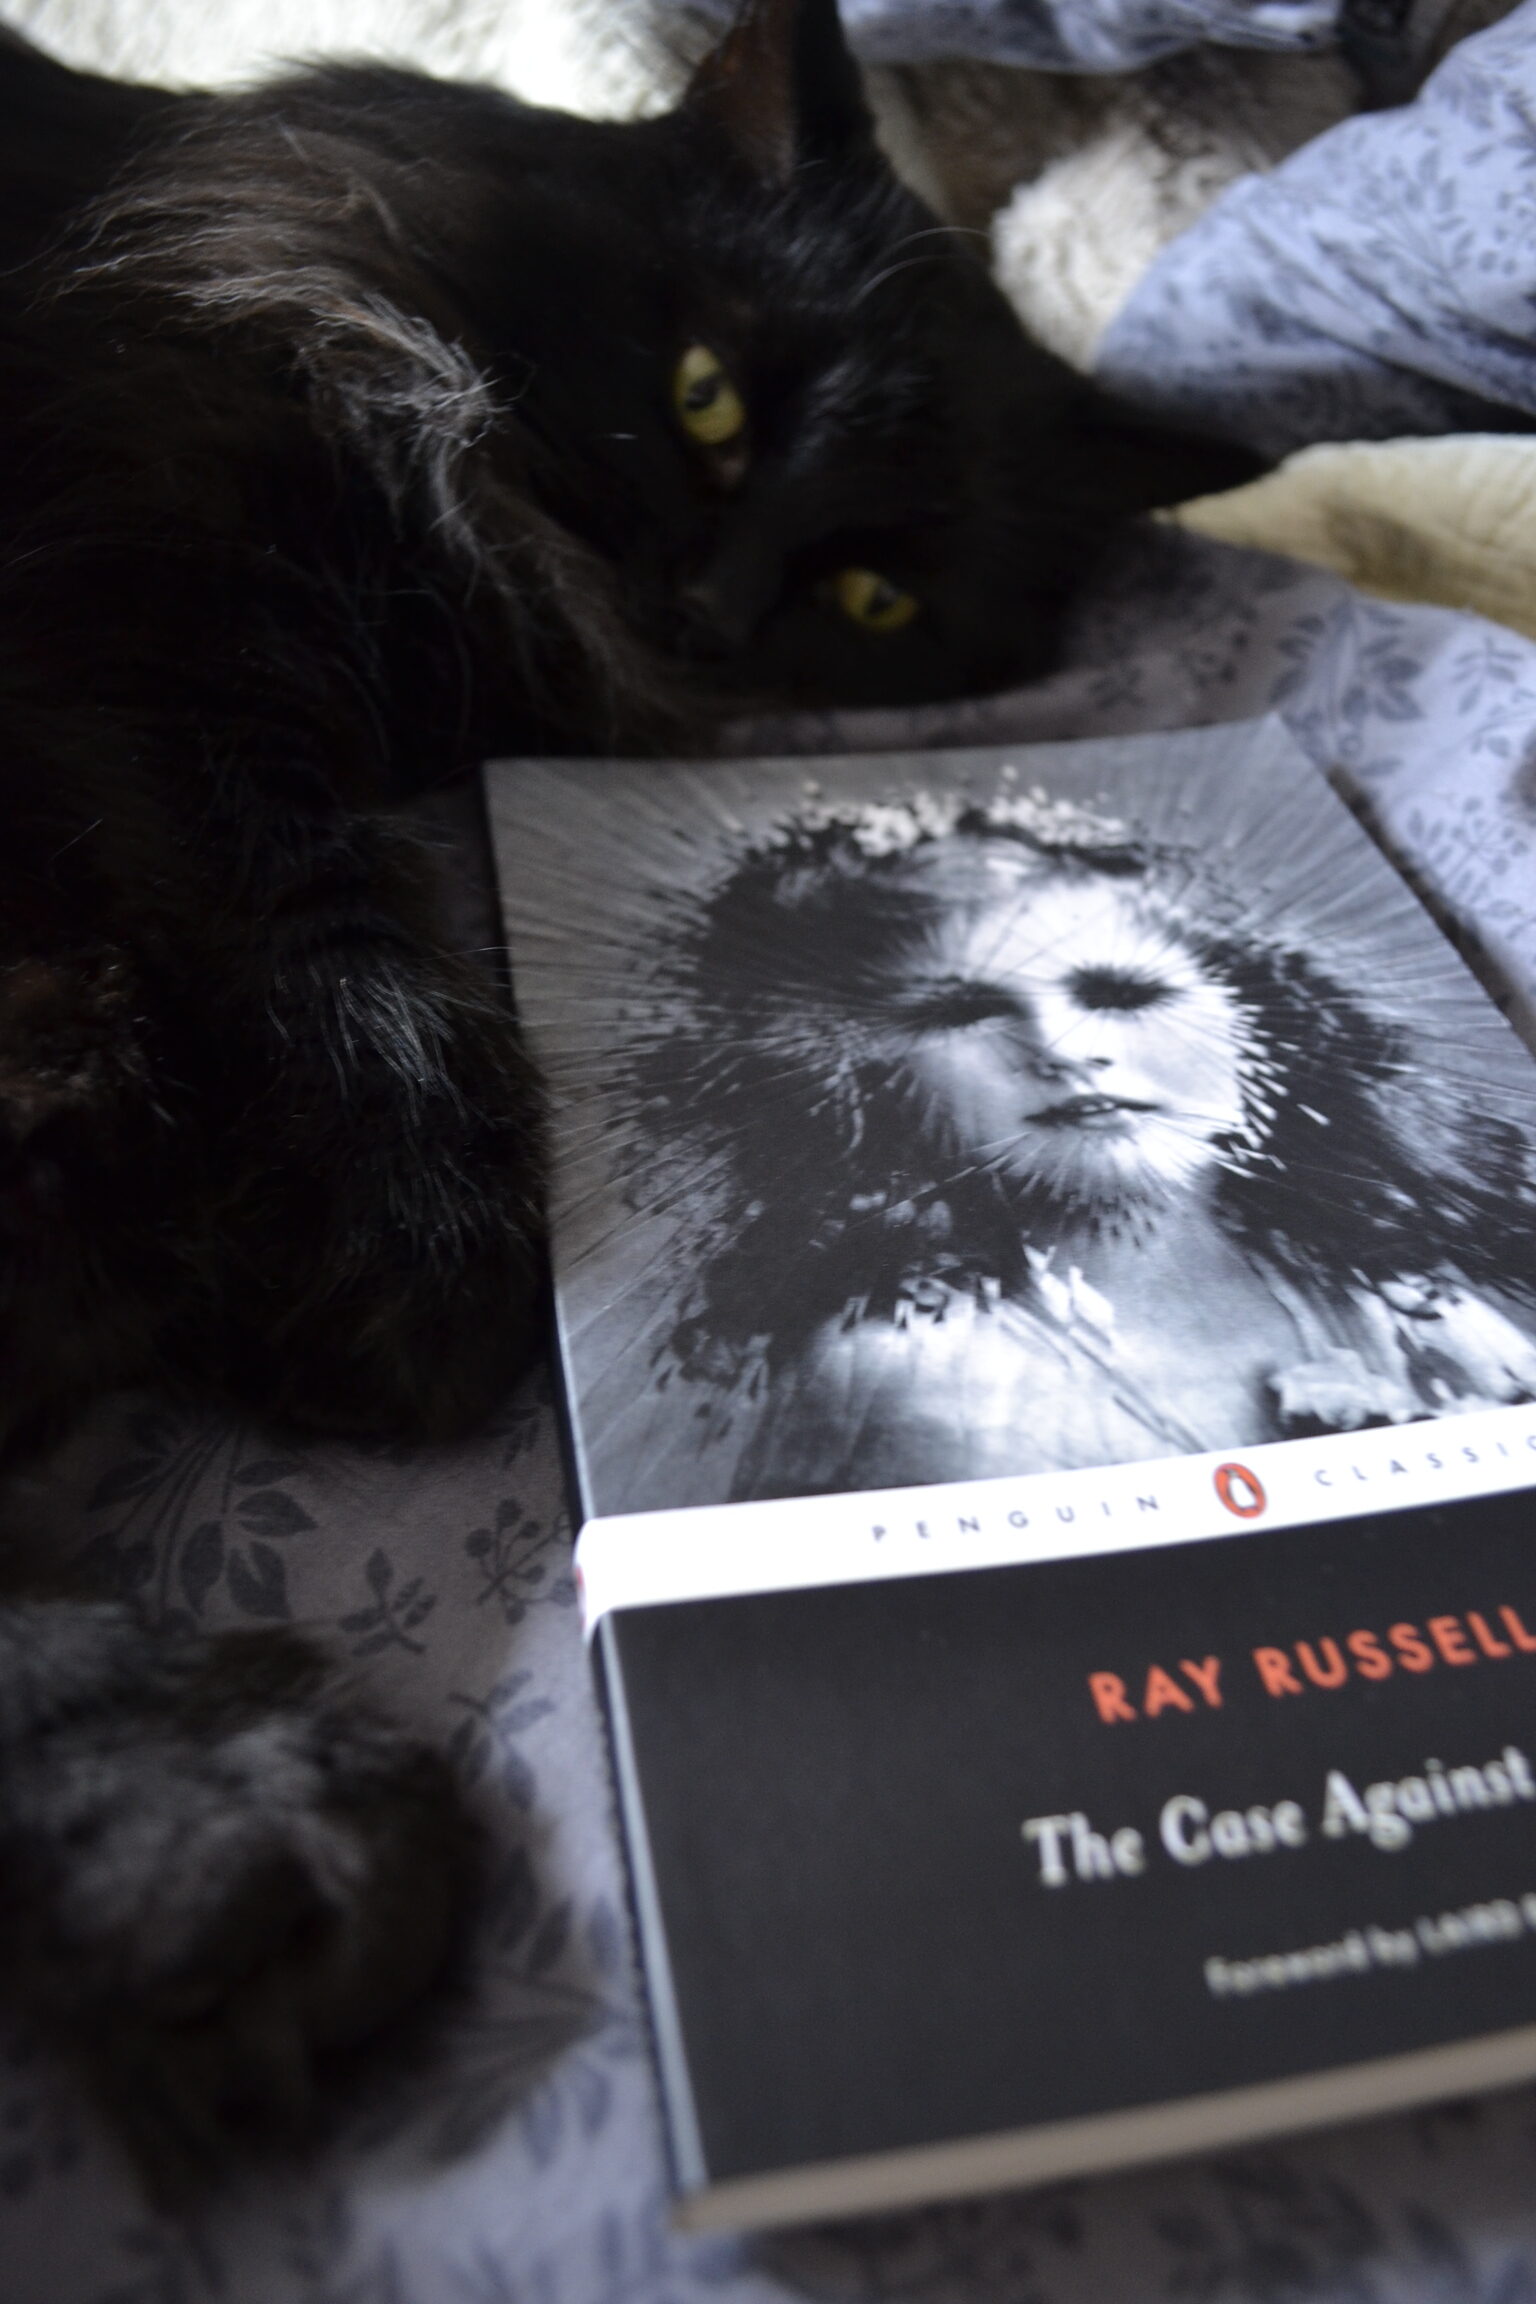 A black cat lies beside The Case Against Satan.